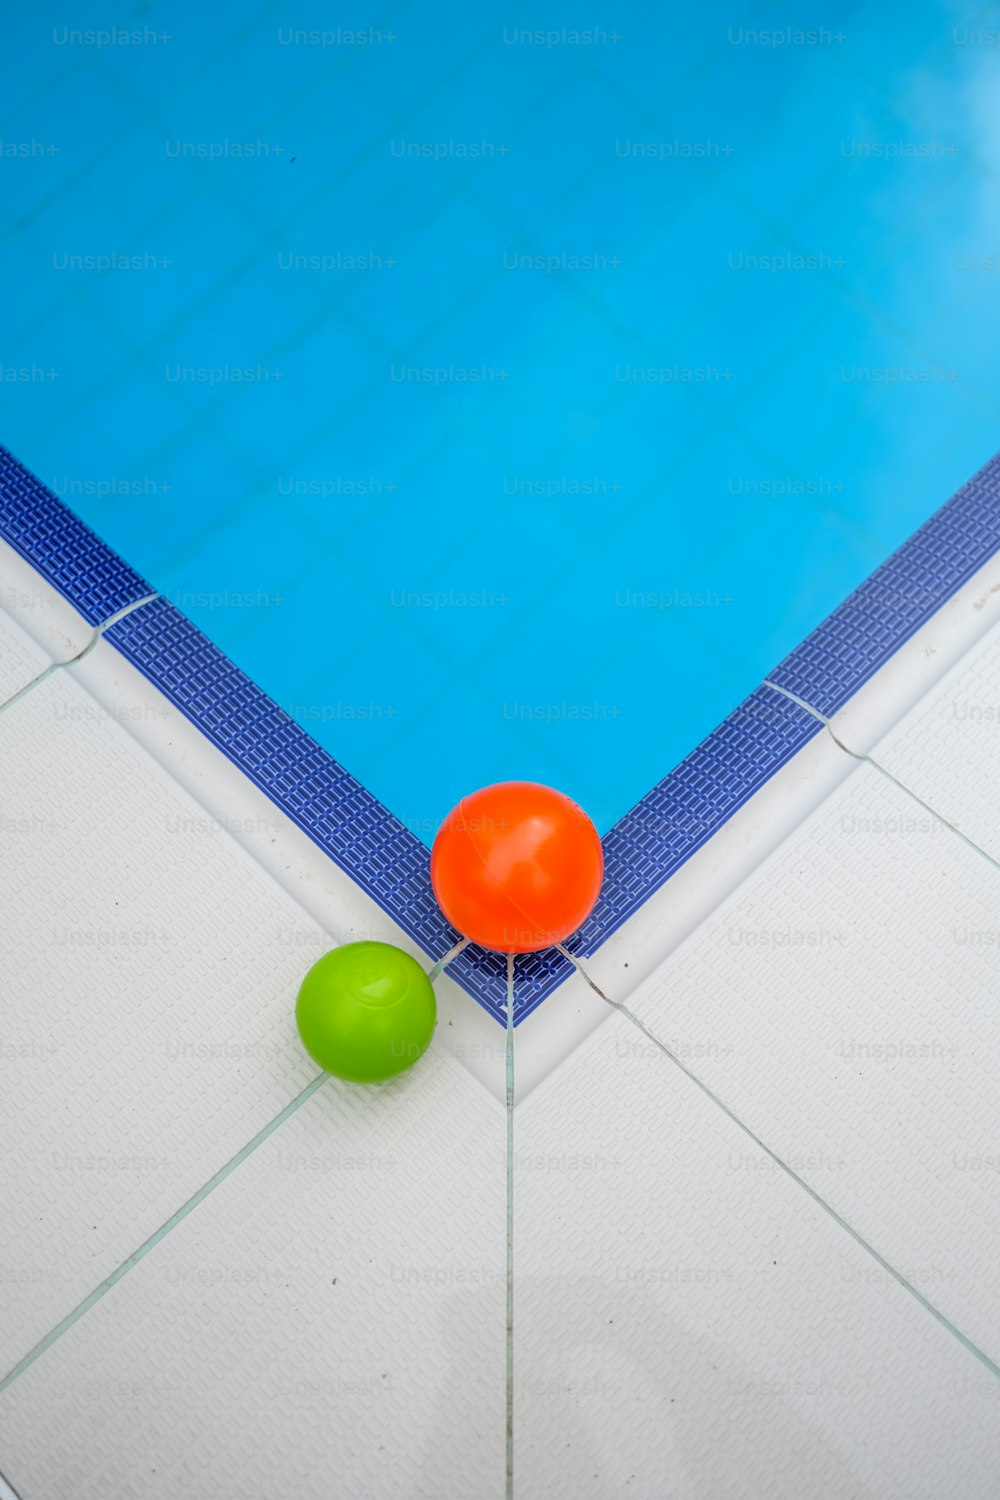 2つのボールとネットのあるプール